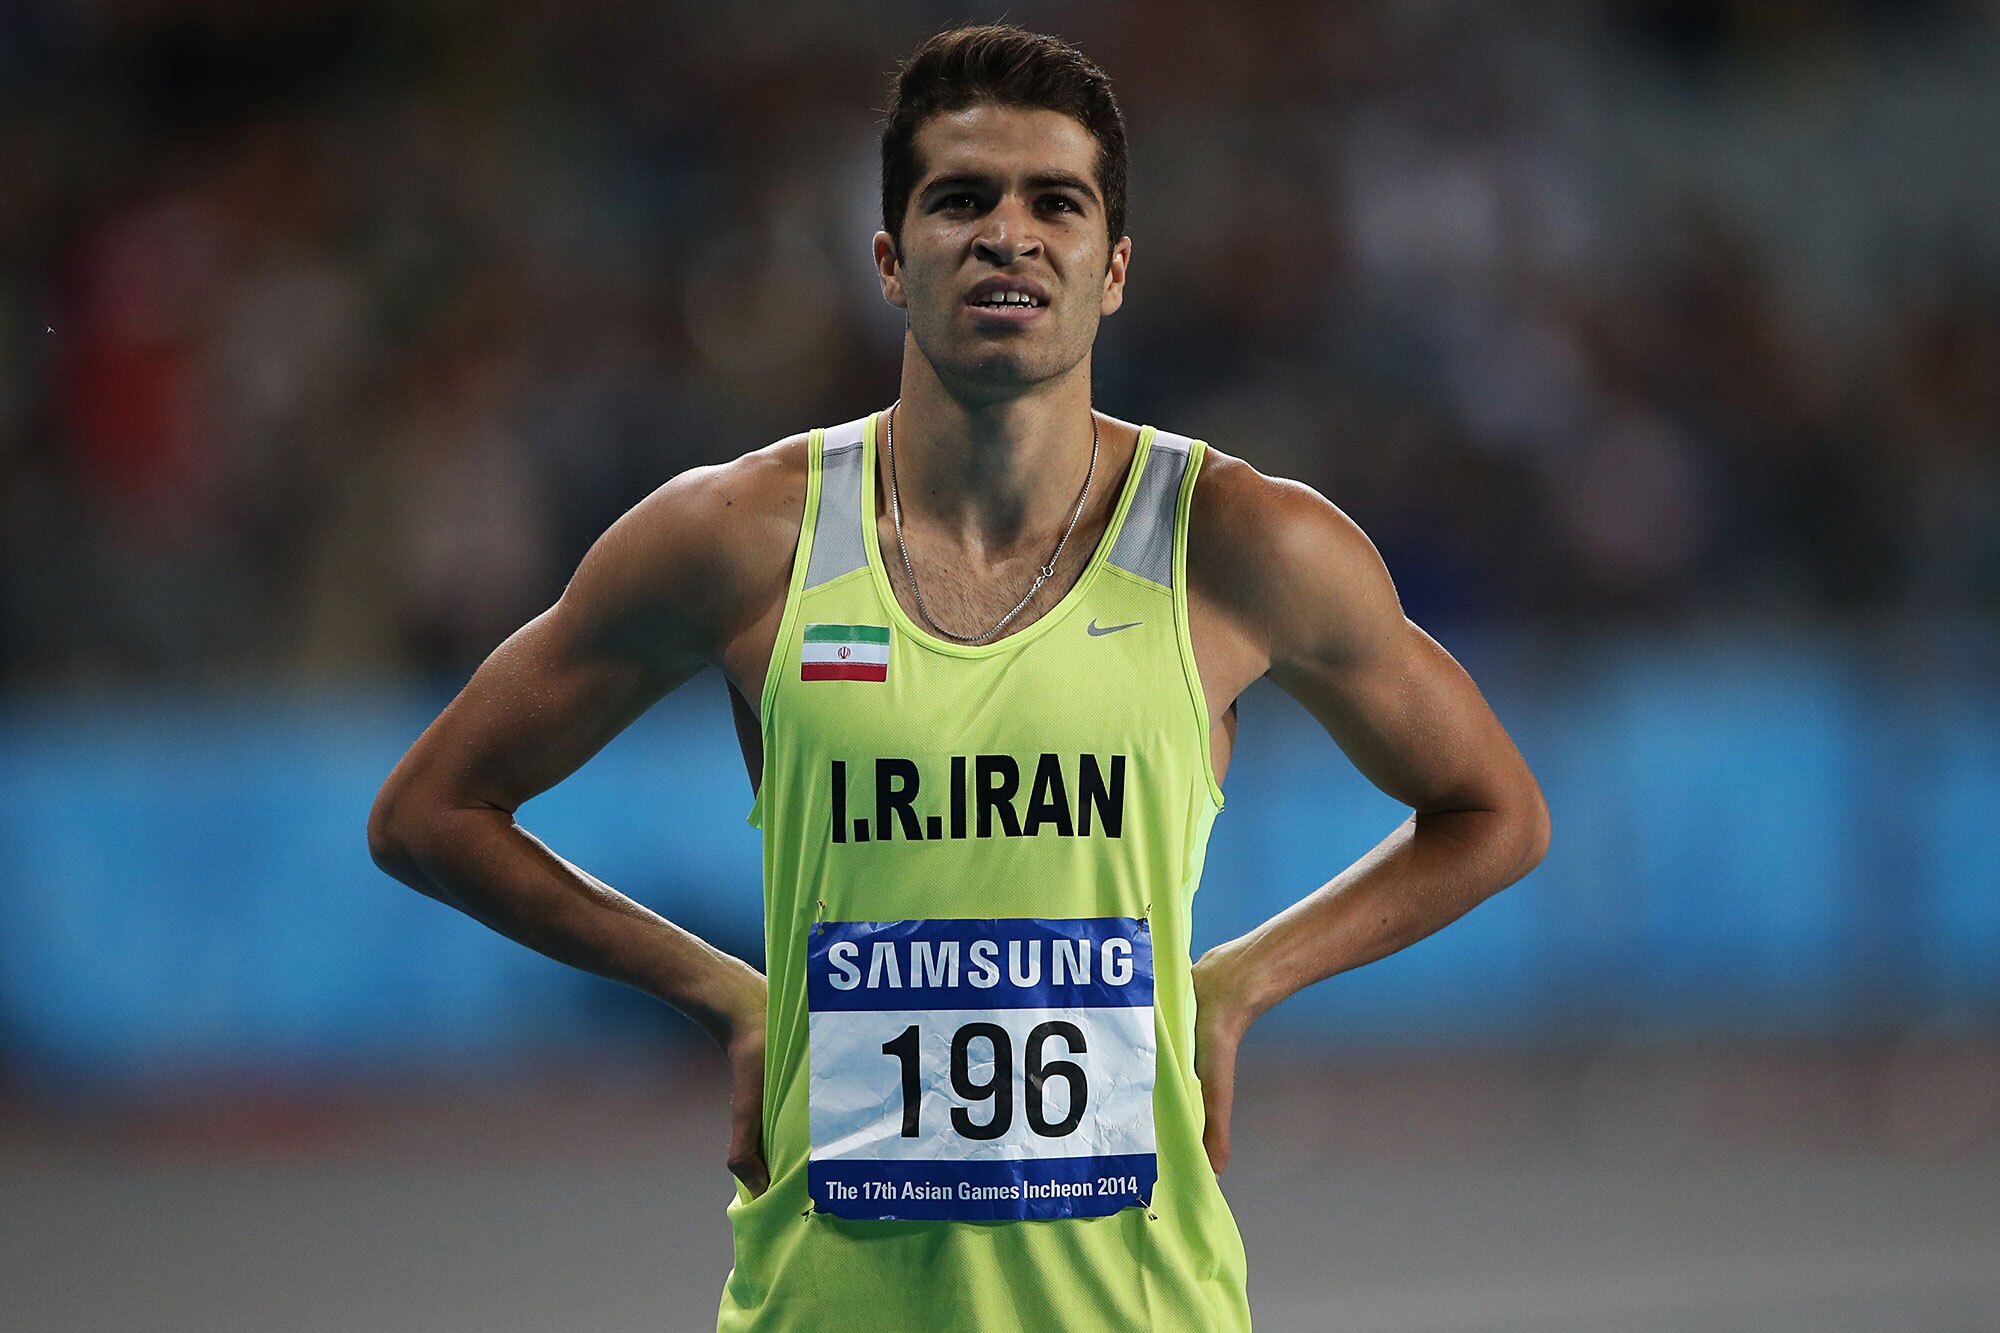 تفتیان رکورد ۱۰۰ متر ایران را جابجا کرد؛ ابارقی به نیمه نهایی رسید